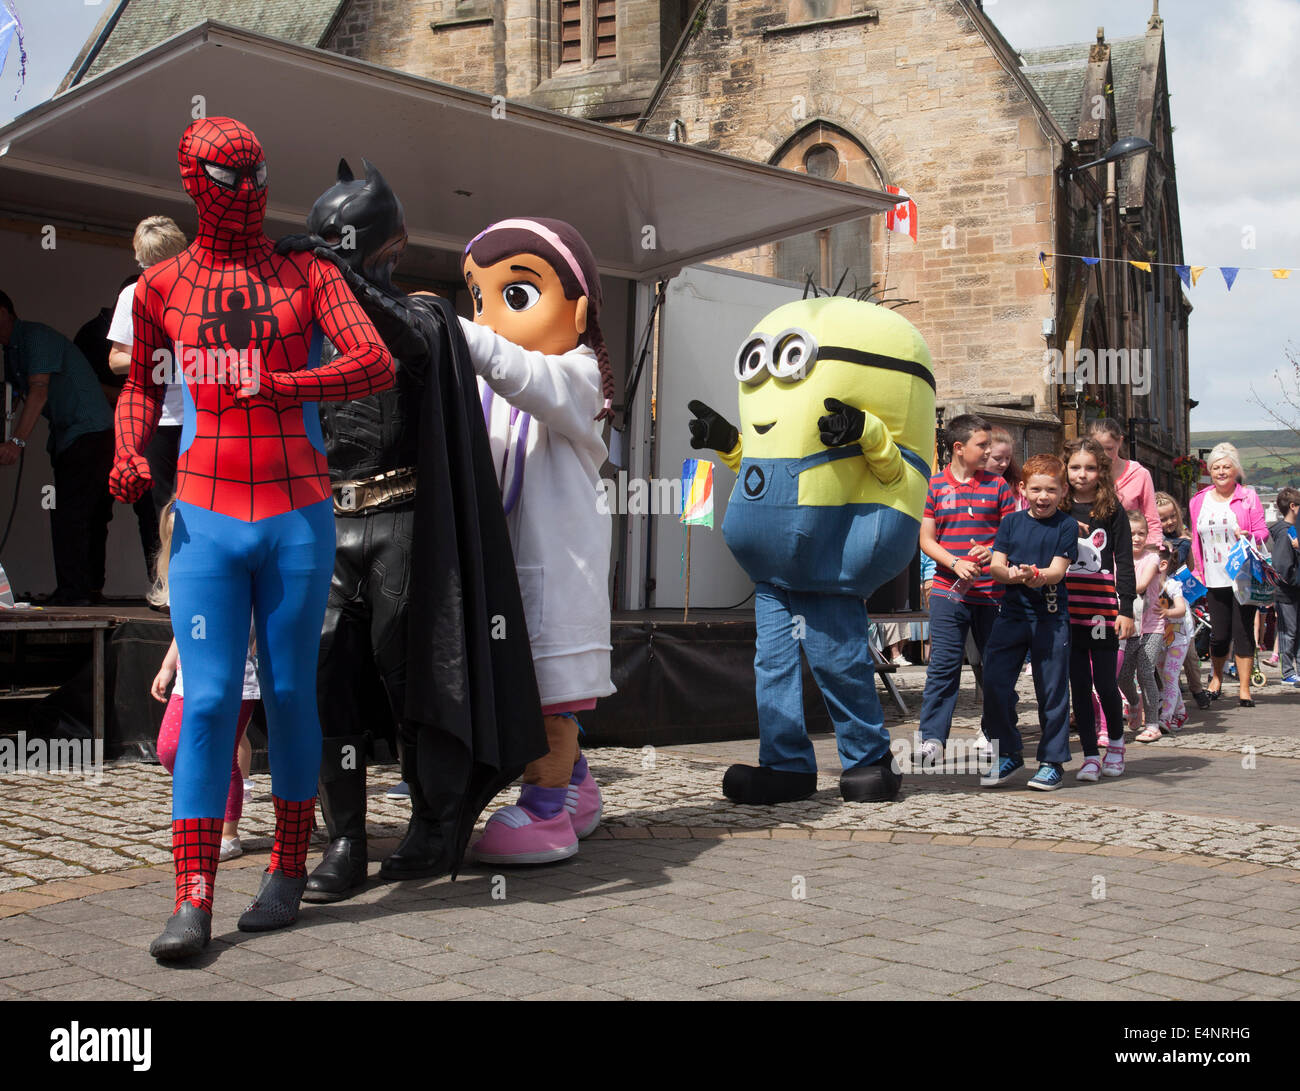 Ayrshire, Schottland, Vereinigtes Königreich. 15. Juli 2014. Spiderman und Batman führen eine Polonaise tanzen während warten auf der Königin Baton Relay für die Commonwealth Games Glasgow2014 die Stadt Dalry in North Ayrshire, Schottland durchläuft. Stockfoto